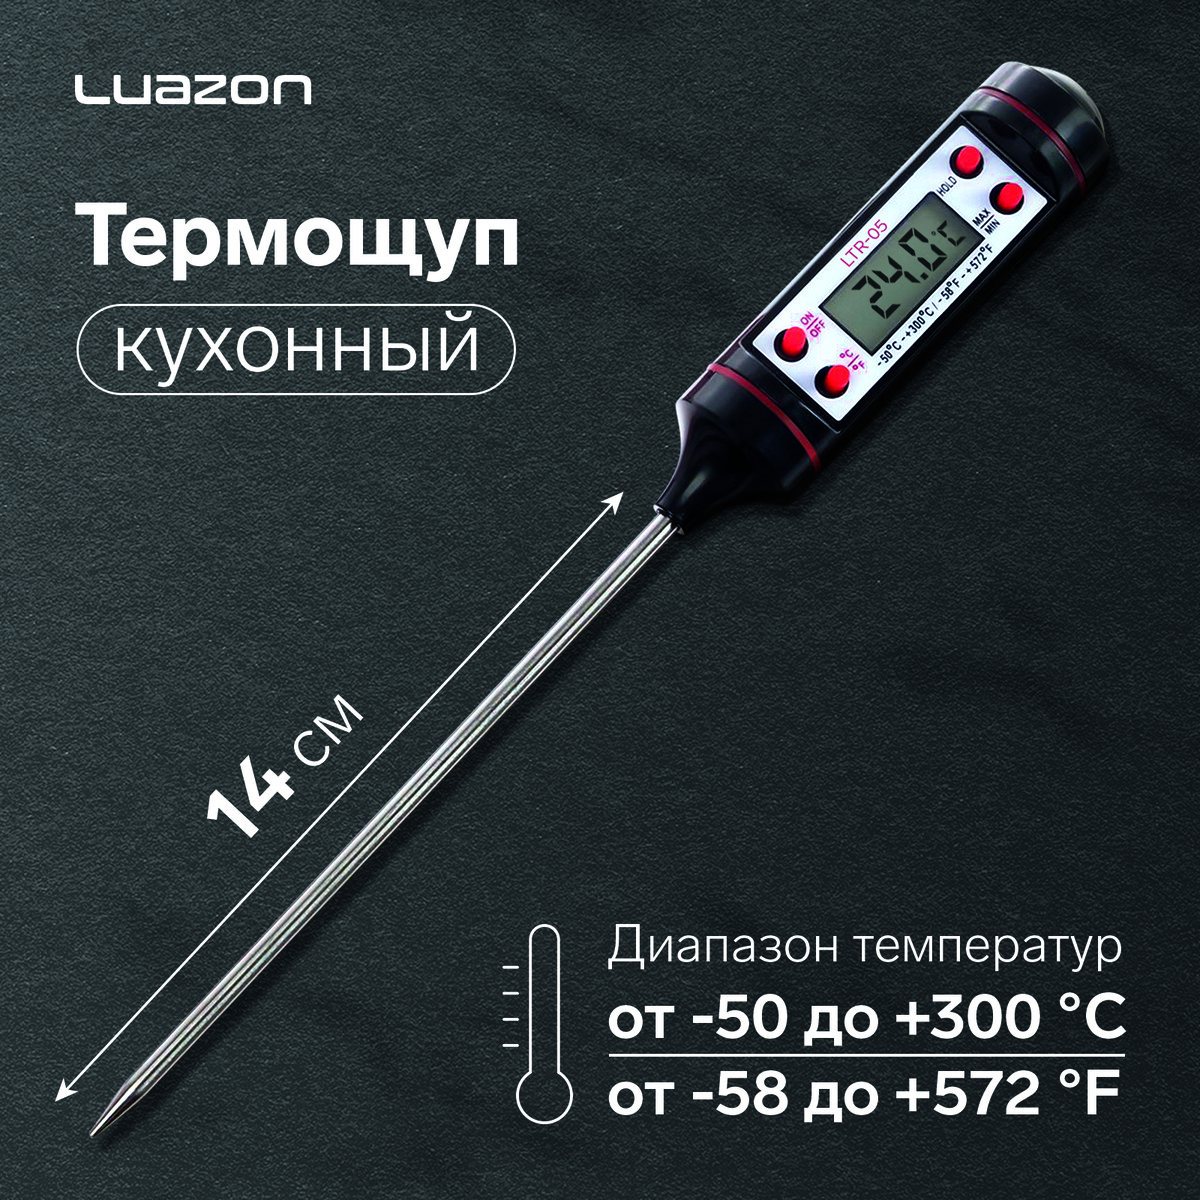 Термощуп кухонный luazon ltr-05, max 300 °c, от lr44, черный